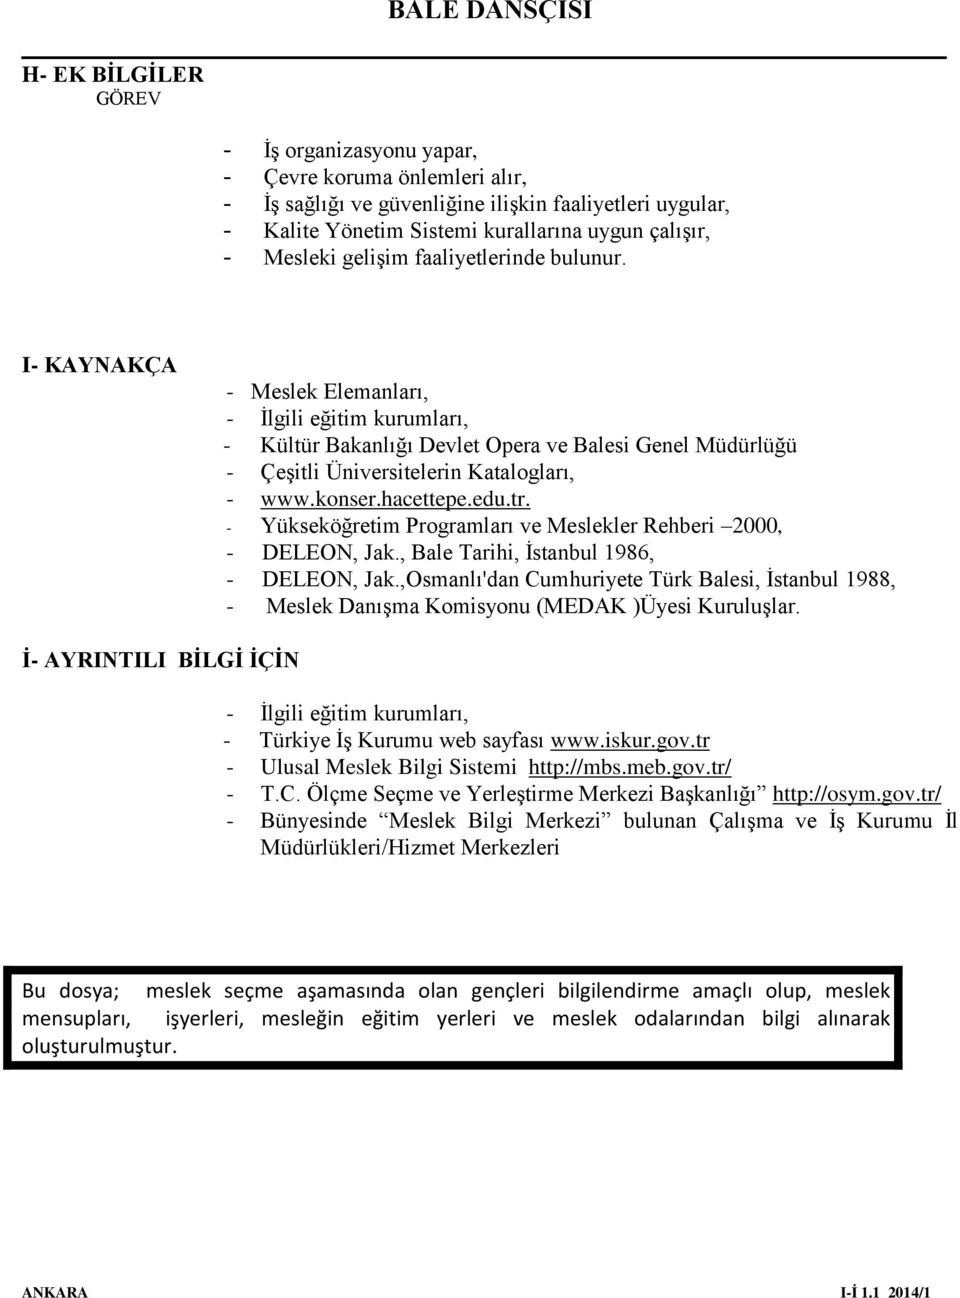 konser.hacettepe.edu.tr. - Yükseköğretim Programları ve Meslekler Rehberi 2000, - DELEON, Jak., Bale Tarihi, İstanbul 1986, - DELEON, Jak.